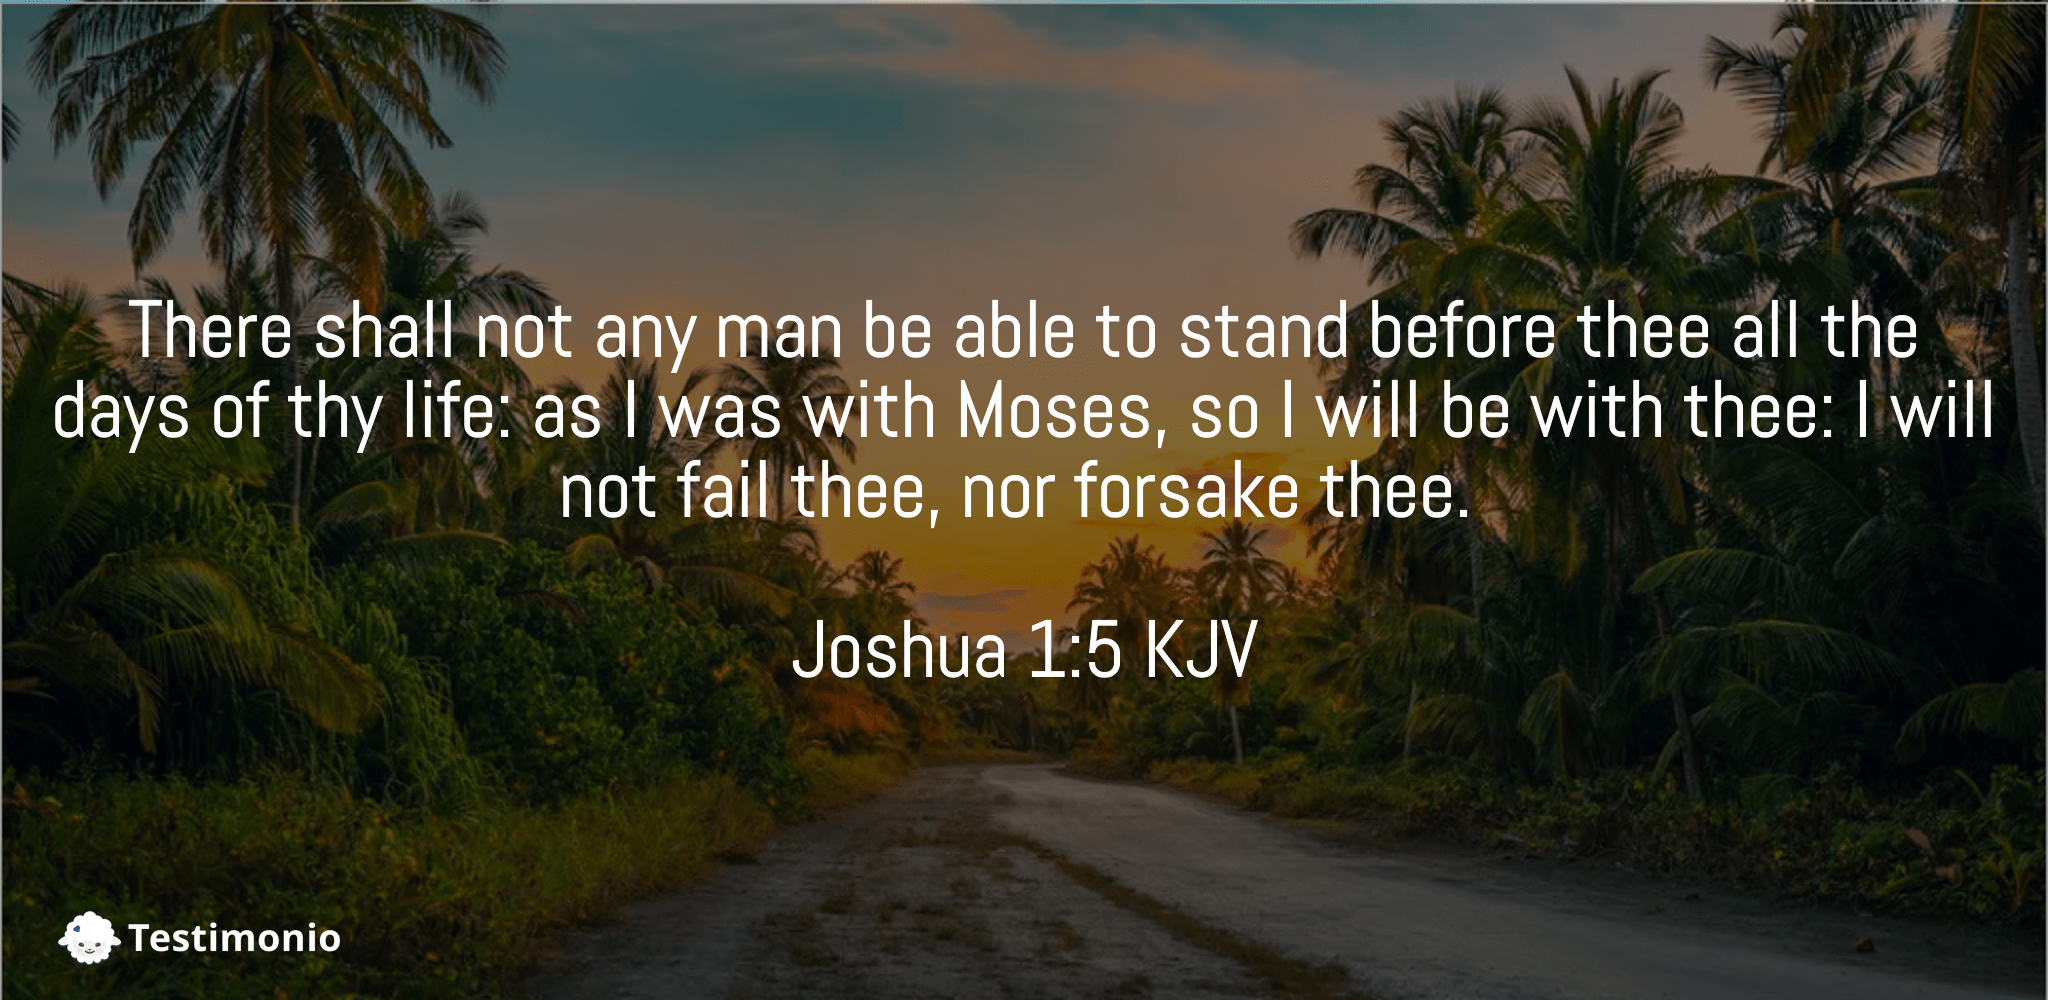 Joshua 1:5